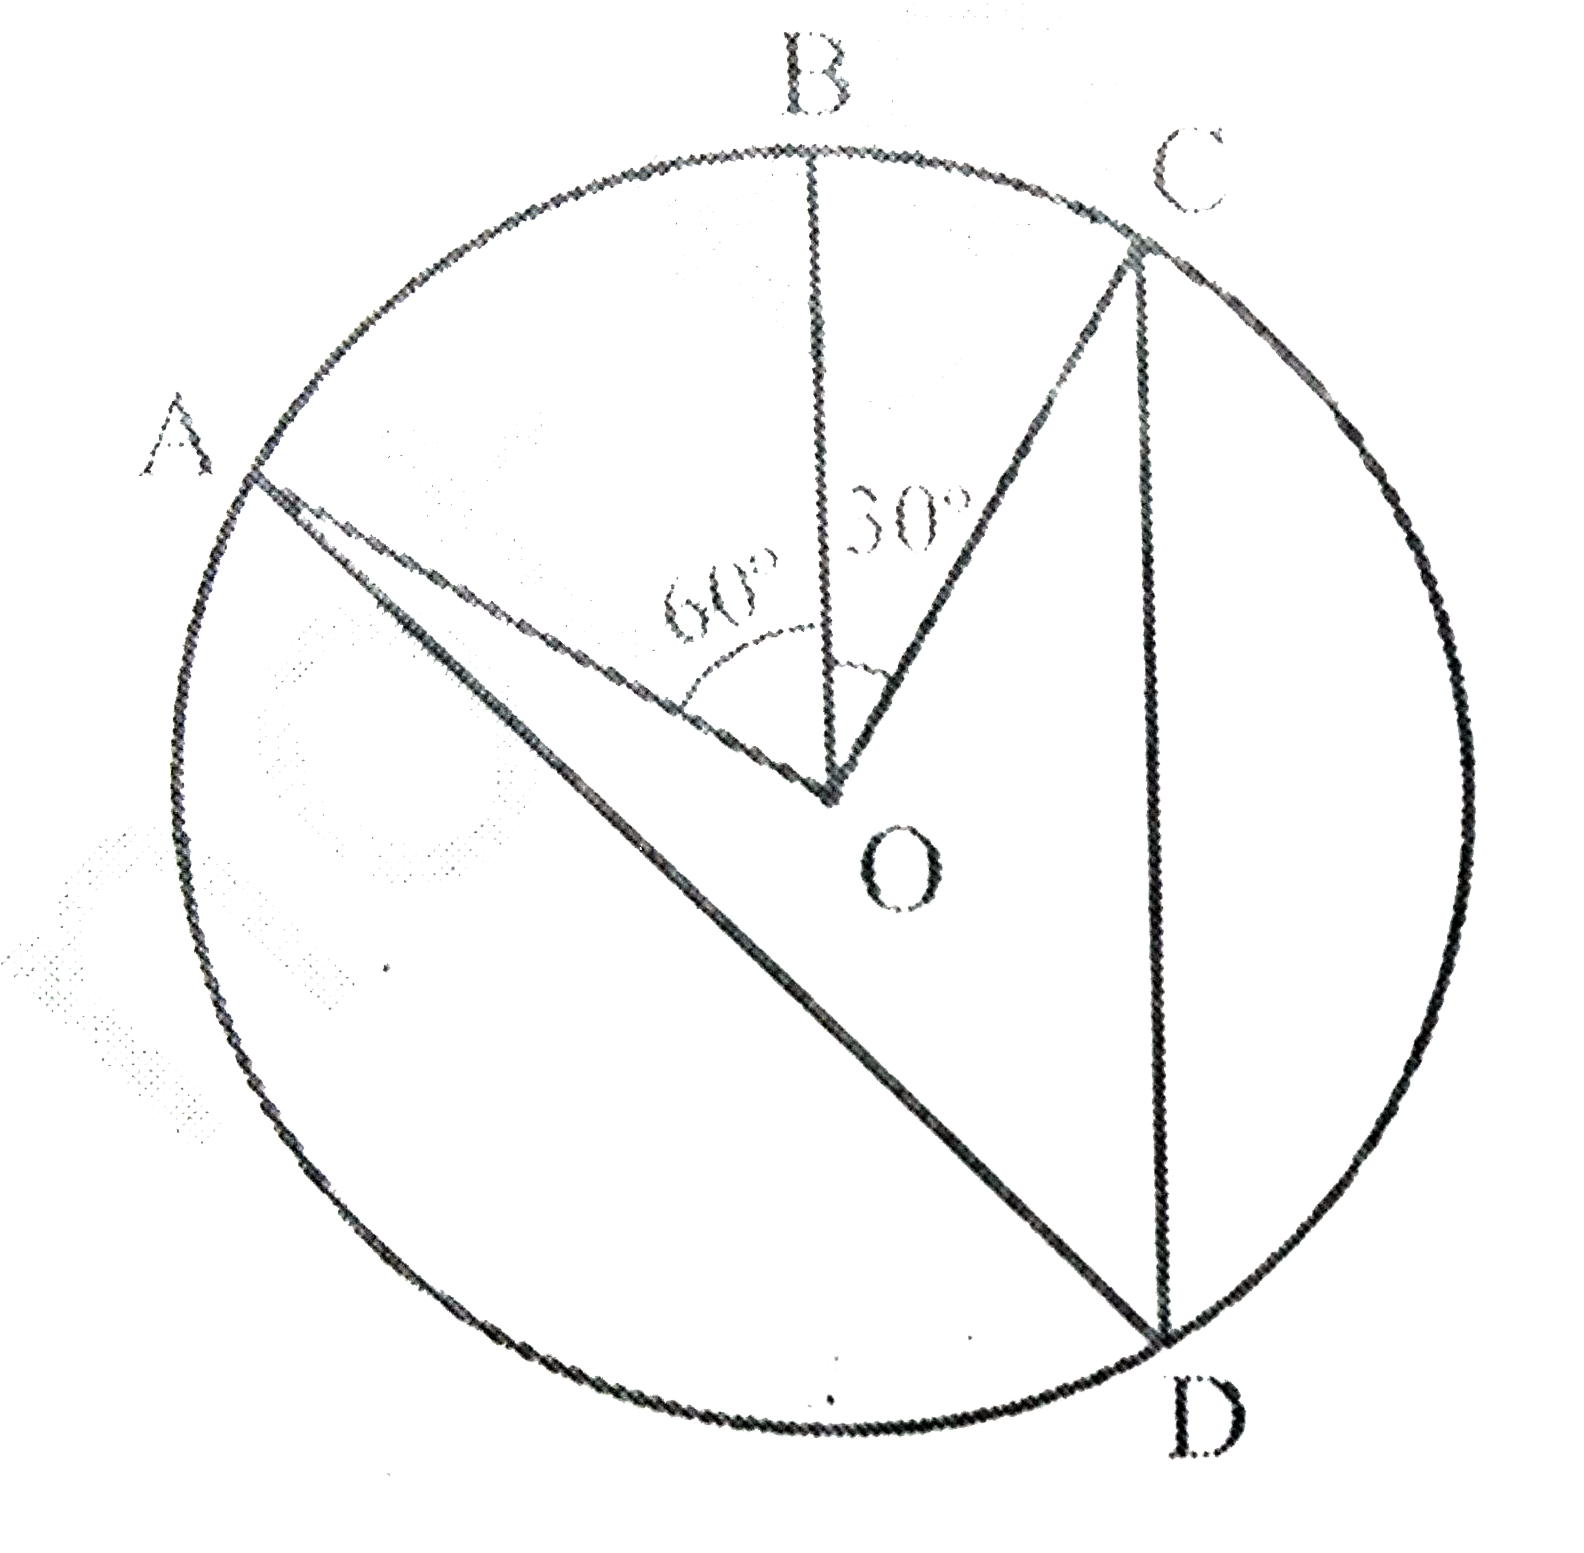 आकृति  में, केंद्र O वाले एक वृत्त पर तीन बिंदु A, B और C इस प्रकार है कि angle BOC=30^(@) तथा angleAOB=60^(@) है यदि चाप ABC के अतिरिक्त वृत्त पर D एक बिंदु है तो angleADC ज्ञात कीजिए।